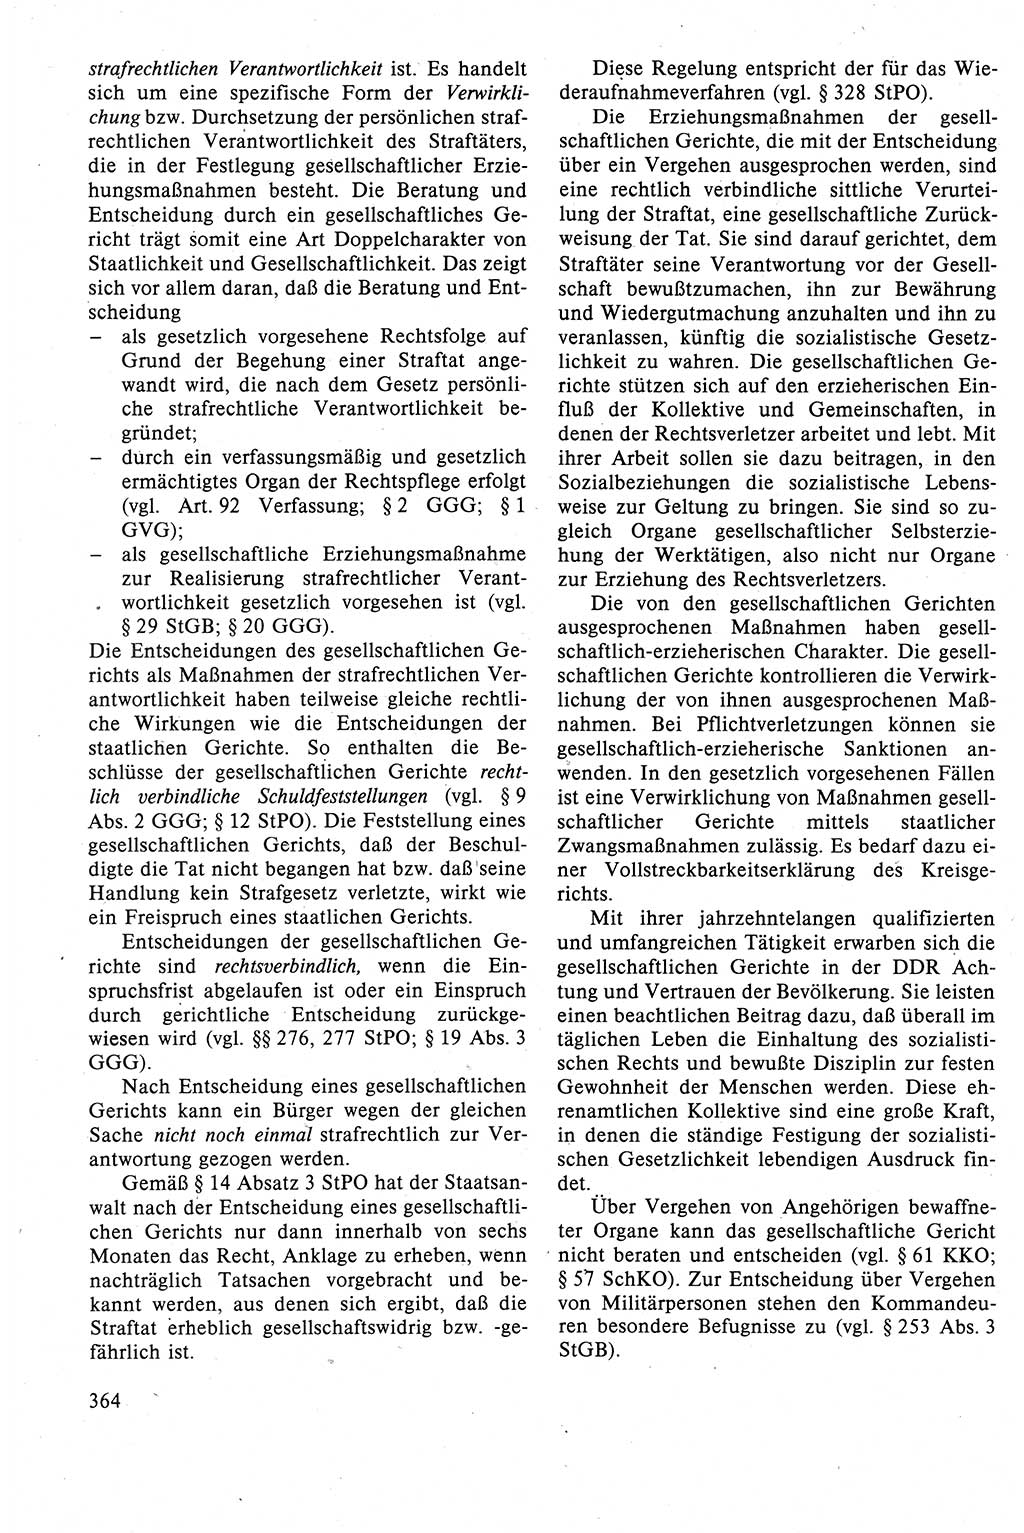 Strafrecht der DDR (Deutsche Demokratische Republik), Lehrbuch 1988, Seite 364 (Strafr. DDR Lb. 1988, S. 364)